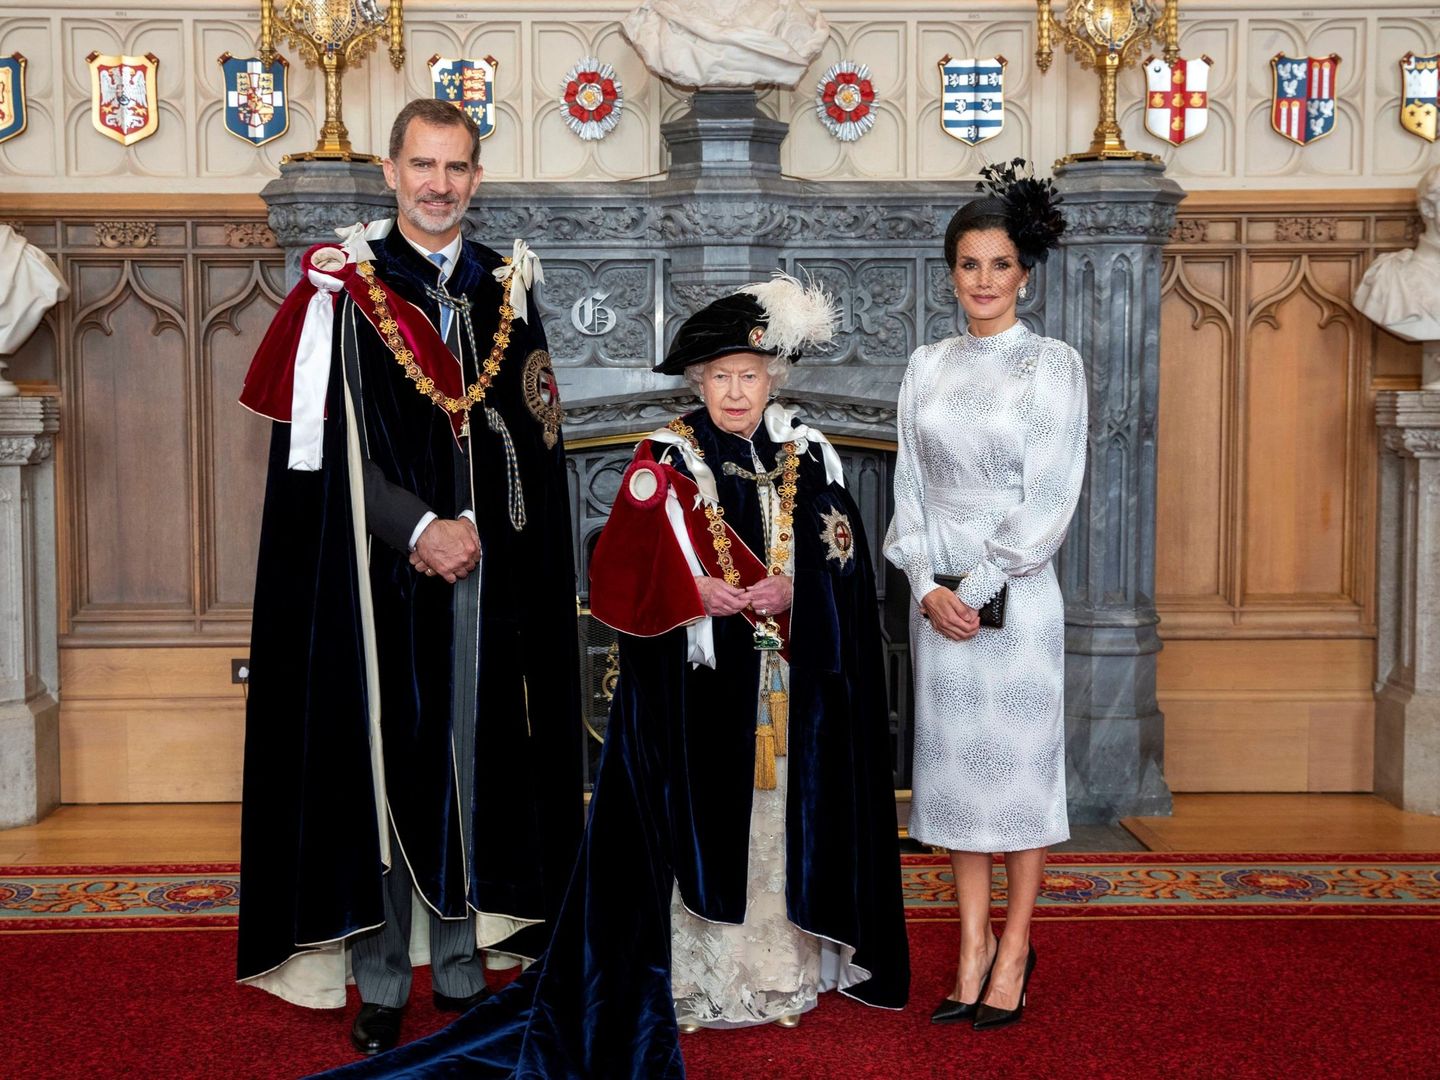 Felipe VI posa junto a la reina Isabel II y la reina Letizia tras ser investido nuevo caballero de la Orden de la Jarretera en 2019. (EFE)